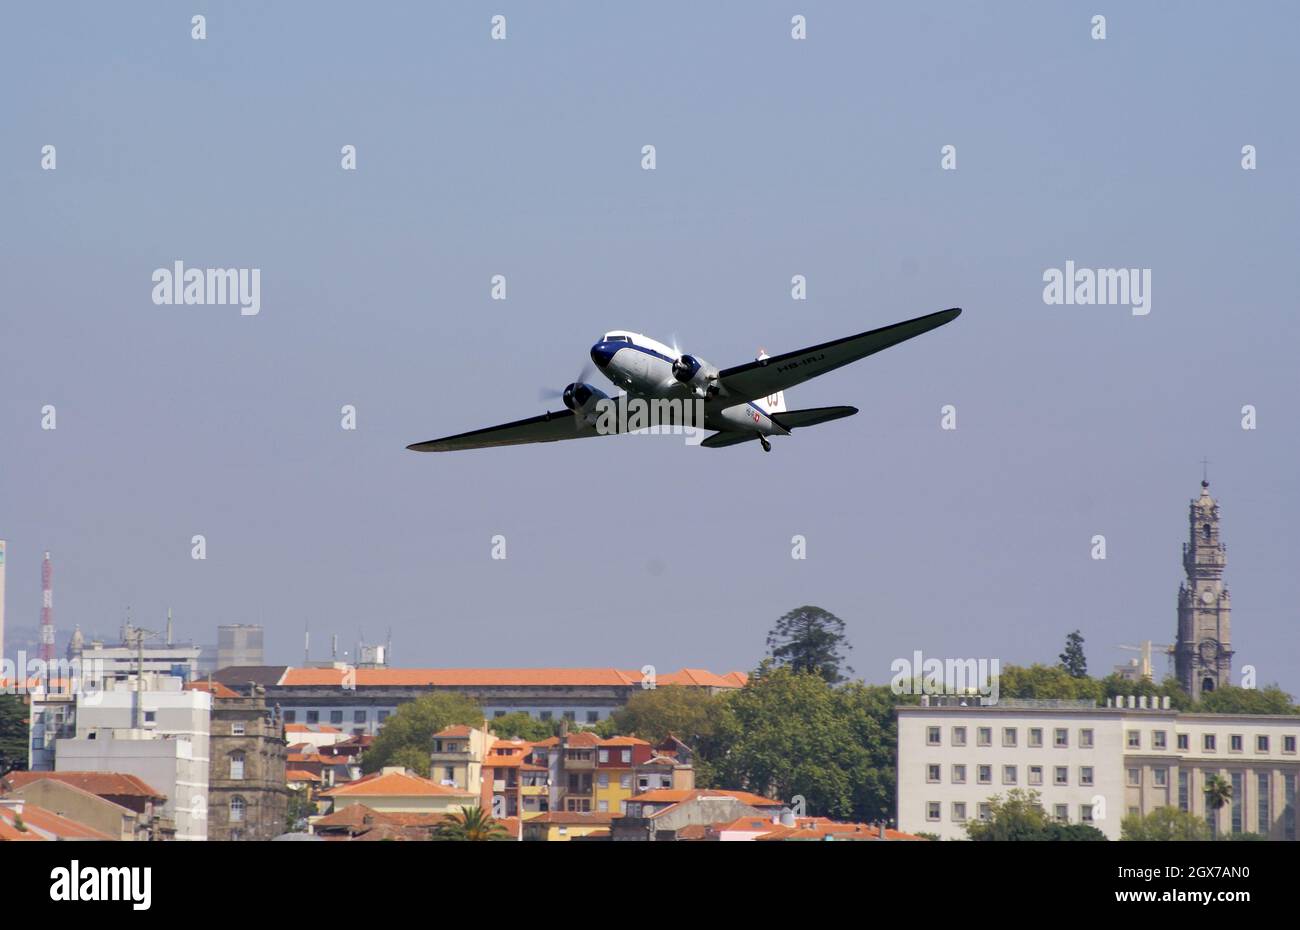 13 septembre 2009. Porto, Portugal. Breitling Douglas DC-3 (HB-IRJ) avion passager volant dans la course aérienne de Red Bull. Banque D'Images